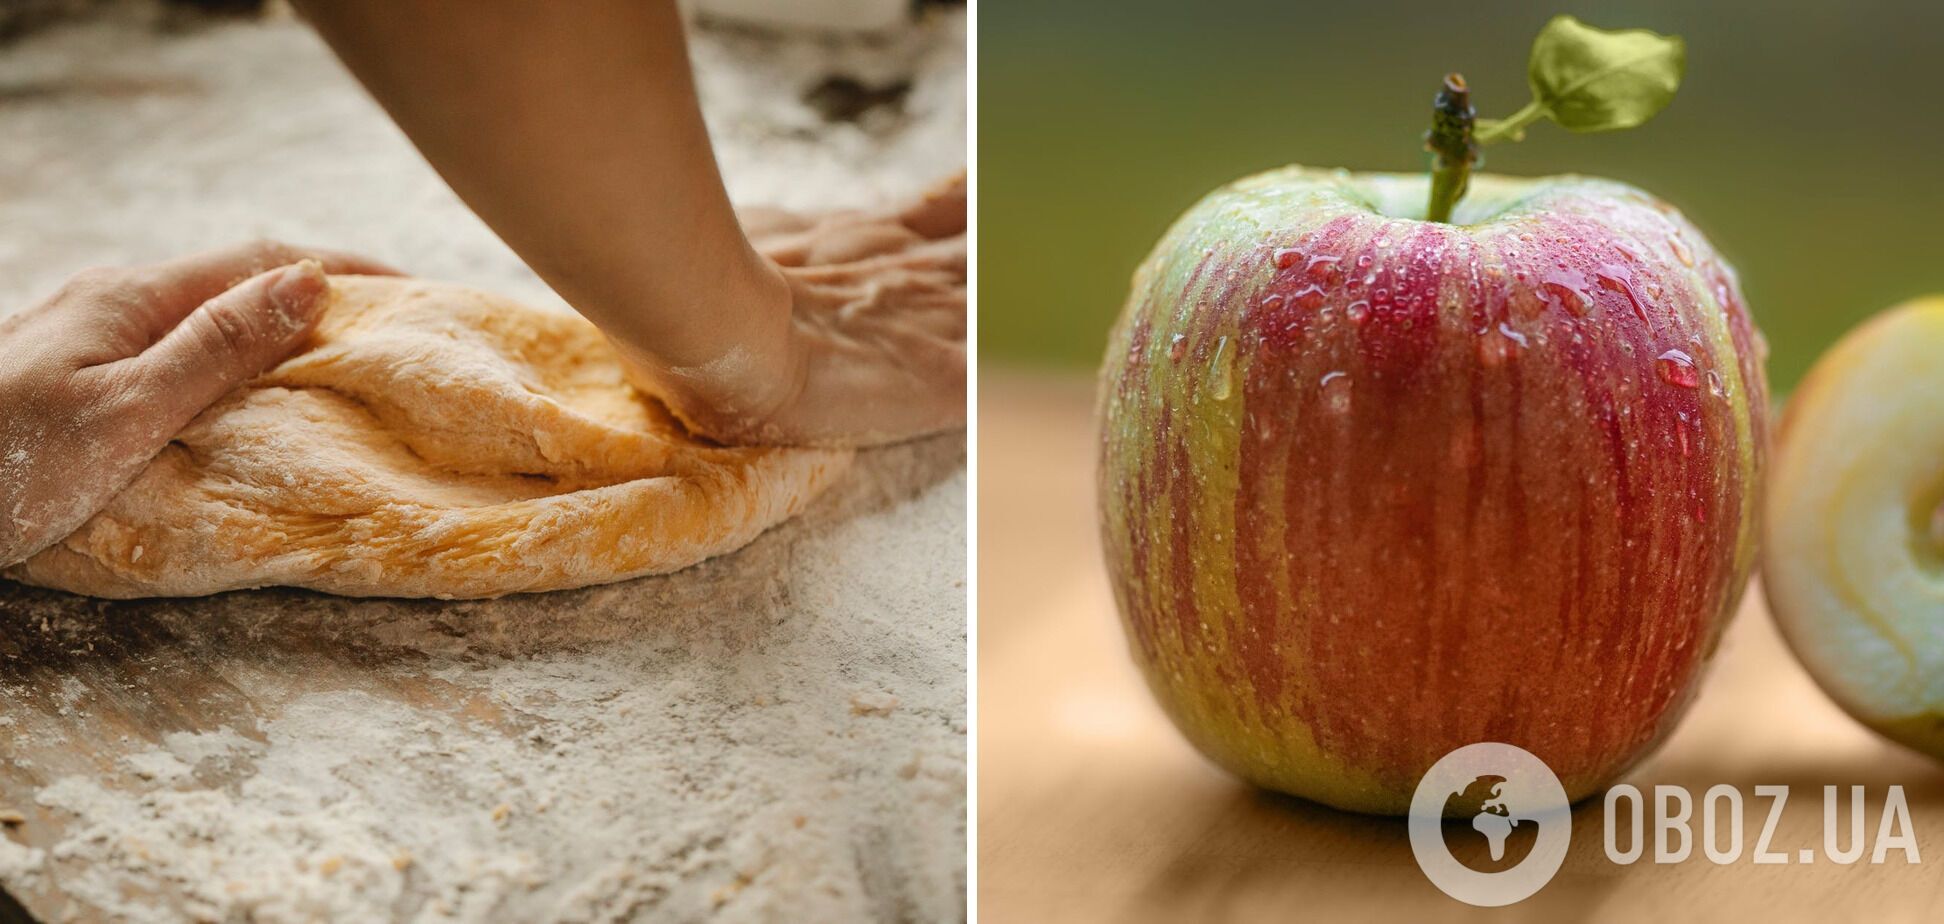 Технология приготовления теста для пирога с яблоками